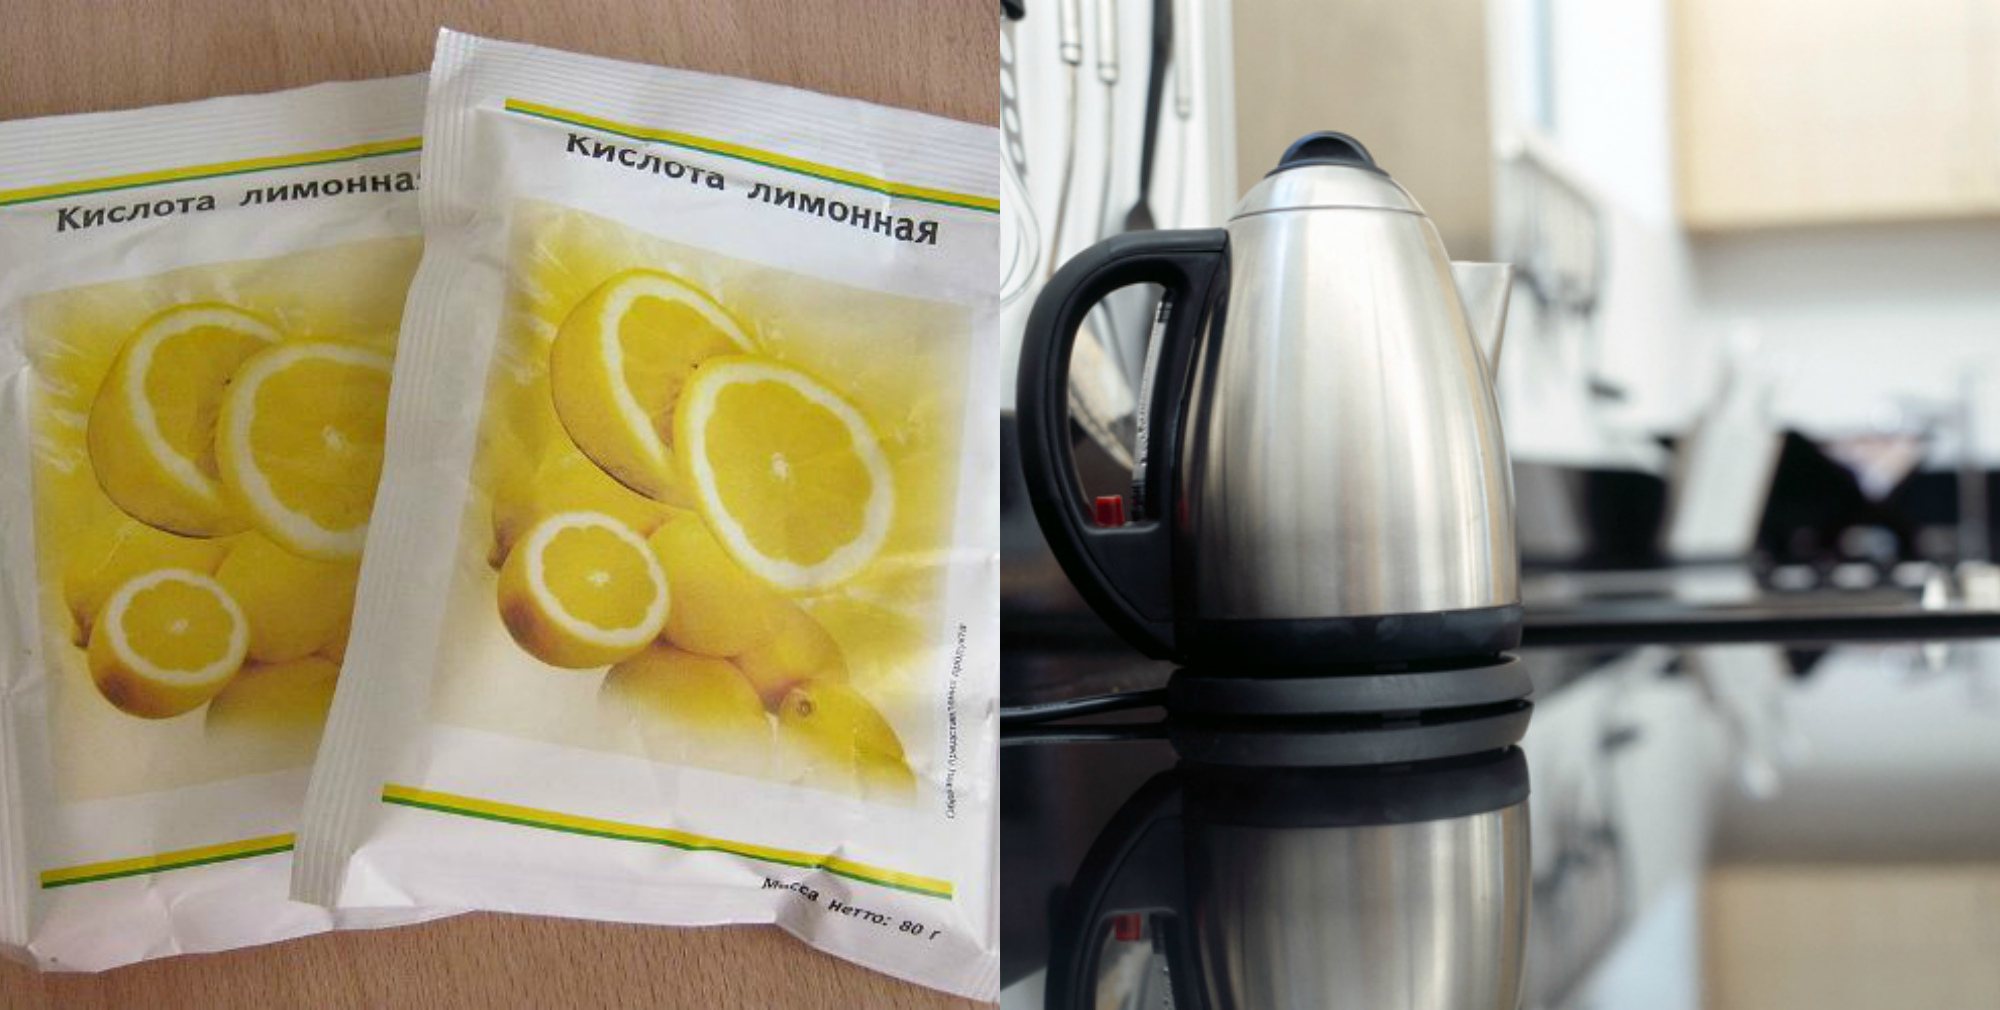 Лимонная кислота для чистки чайника от накипи